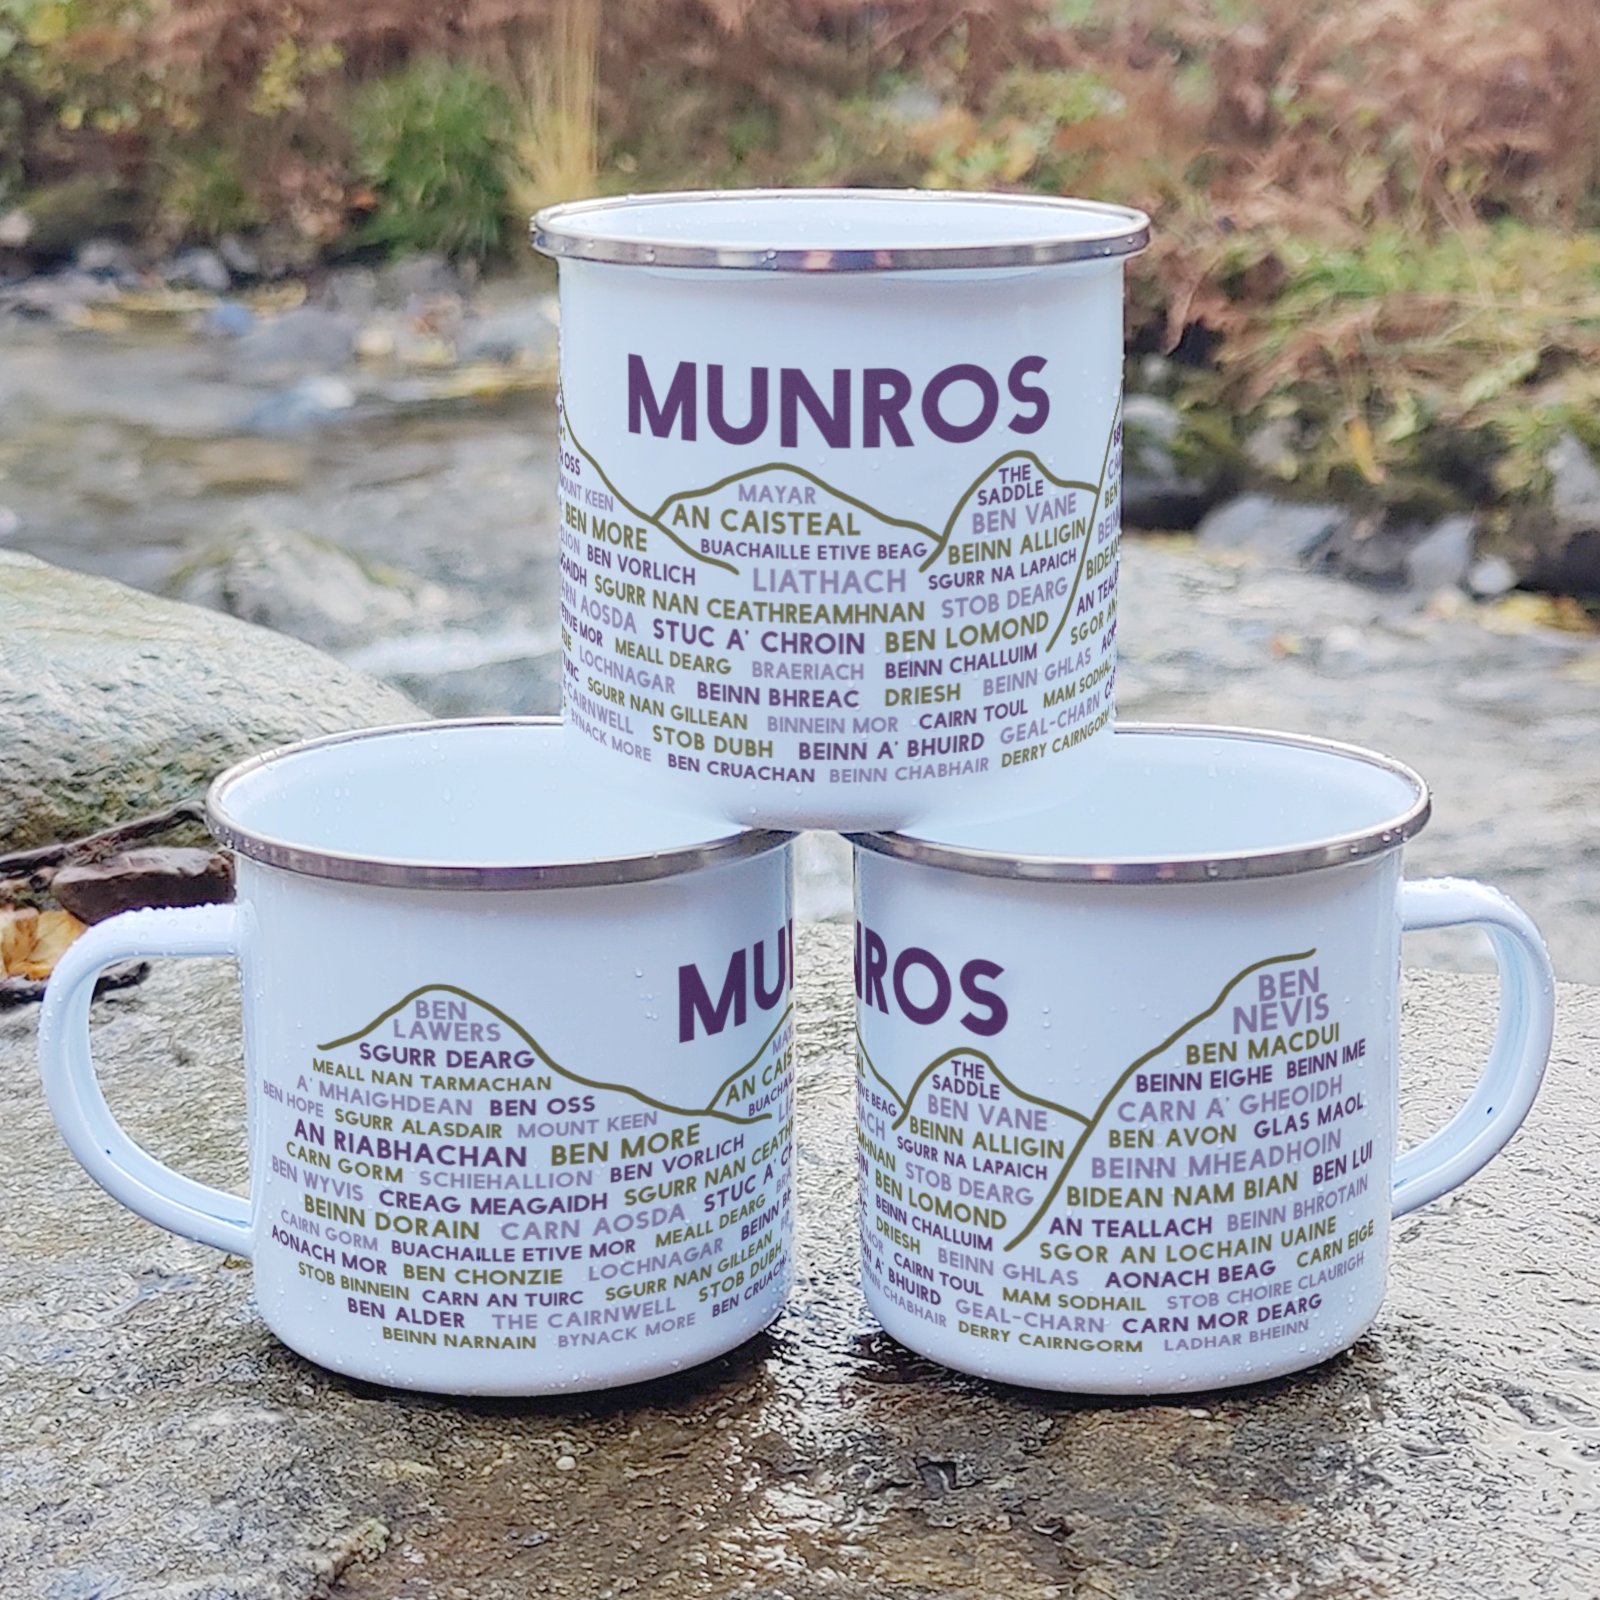 Stack of Munros enamel mugs outdoors